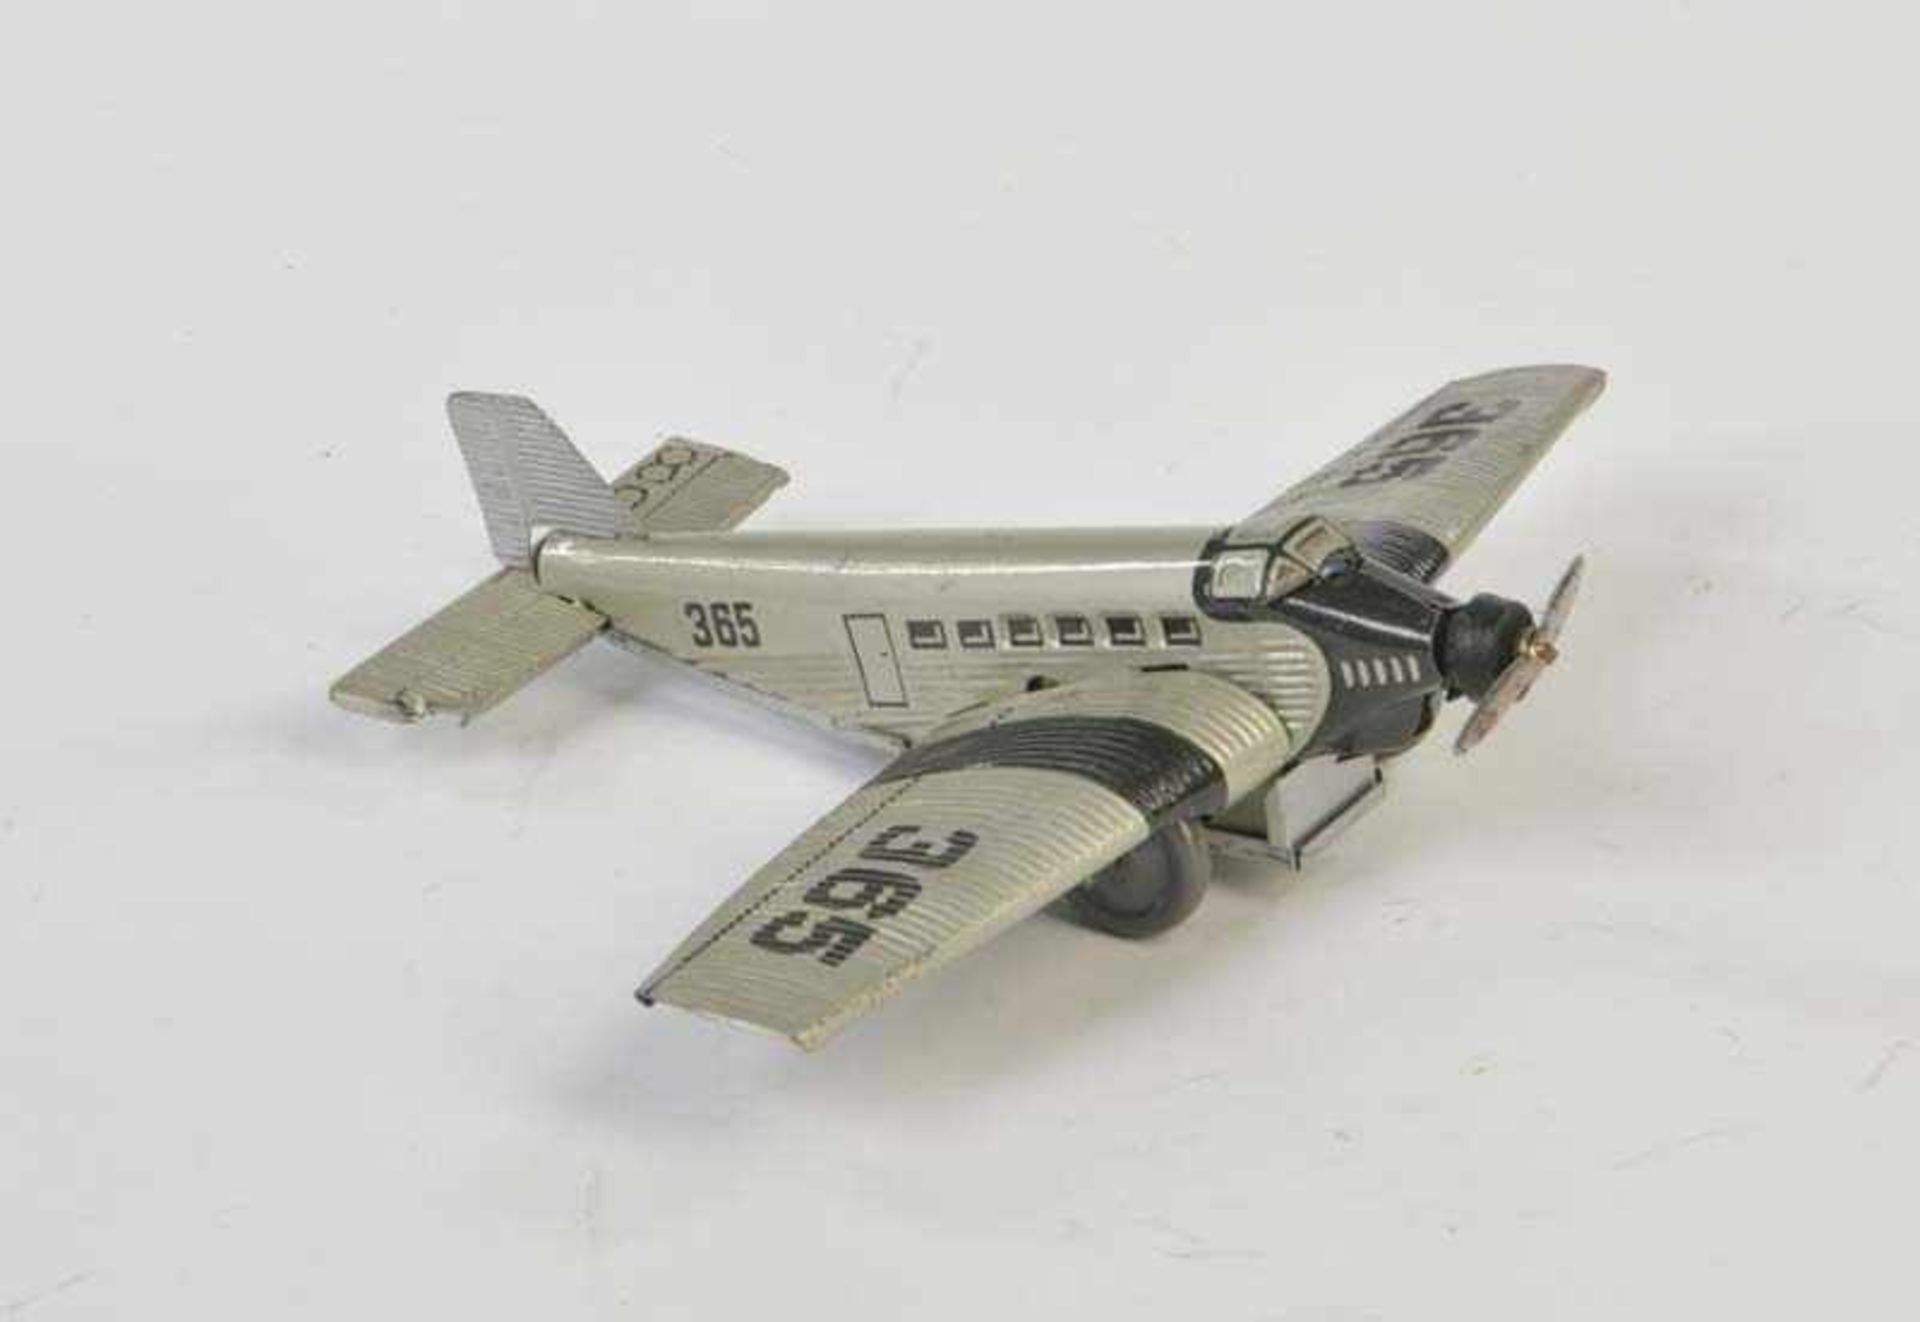 Habi, Flugzeug, Germany VK, 15 cm, Blech, UW ok, min. LM, Z 2Habi, Plane, Germany pw, tin, cw ok,